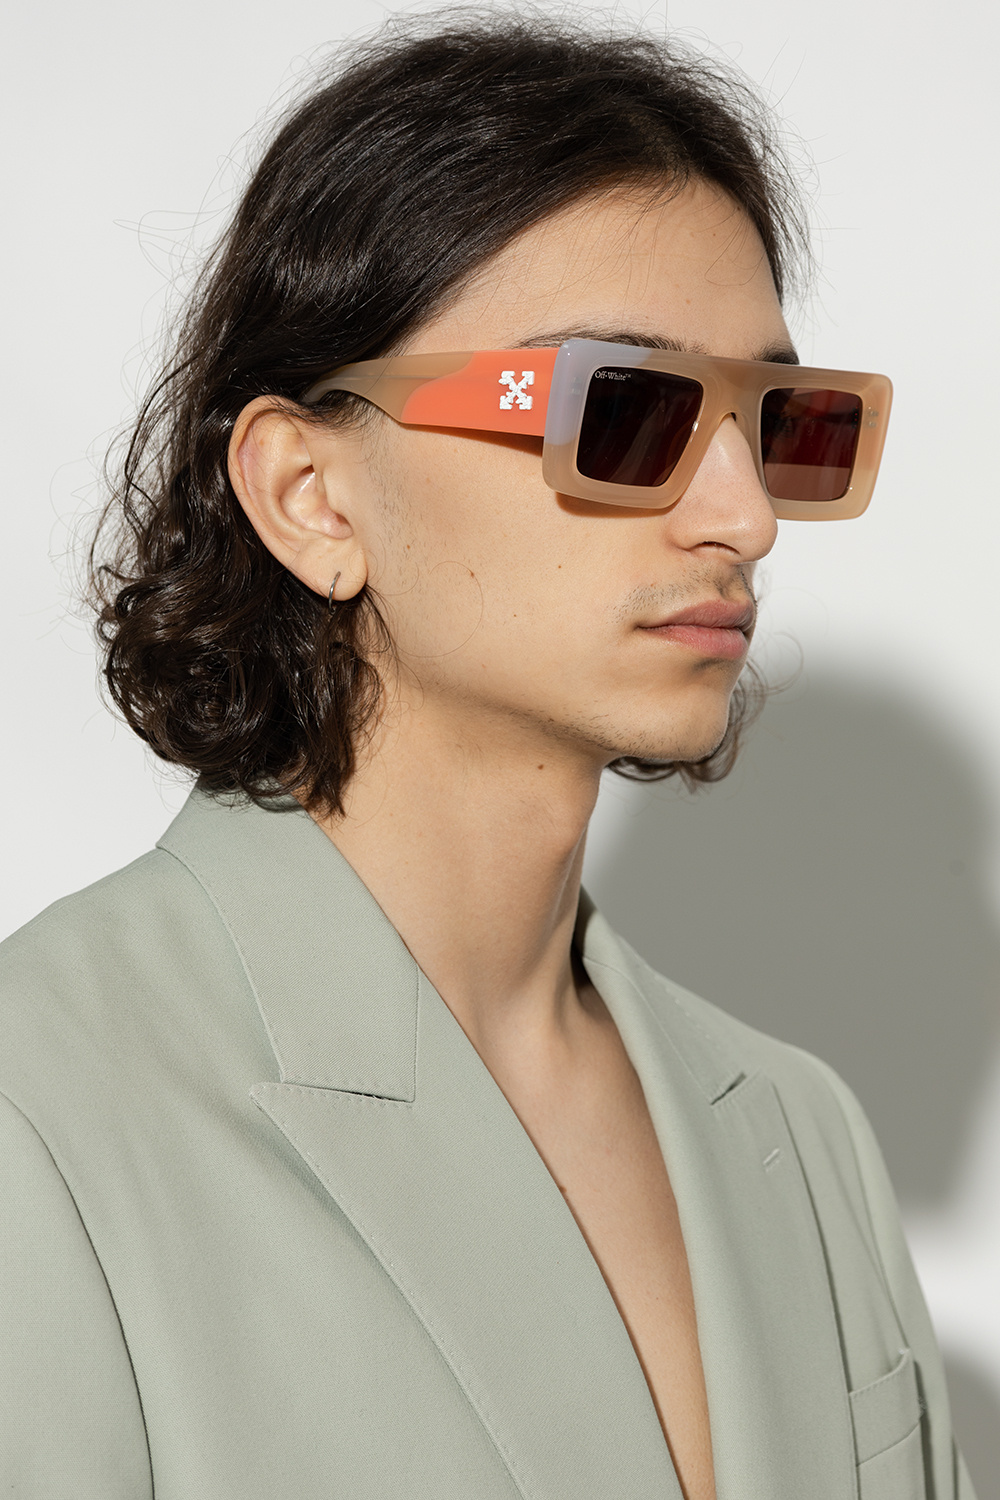 Off-White 'Seattle' sunglasses, Men's Accessorie